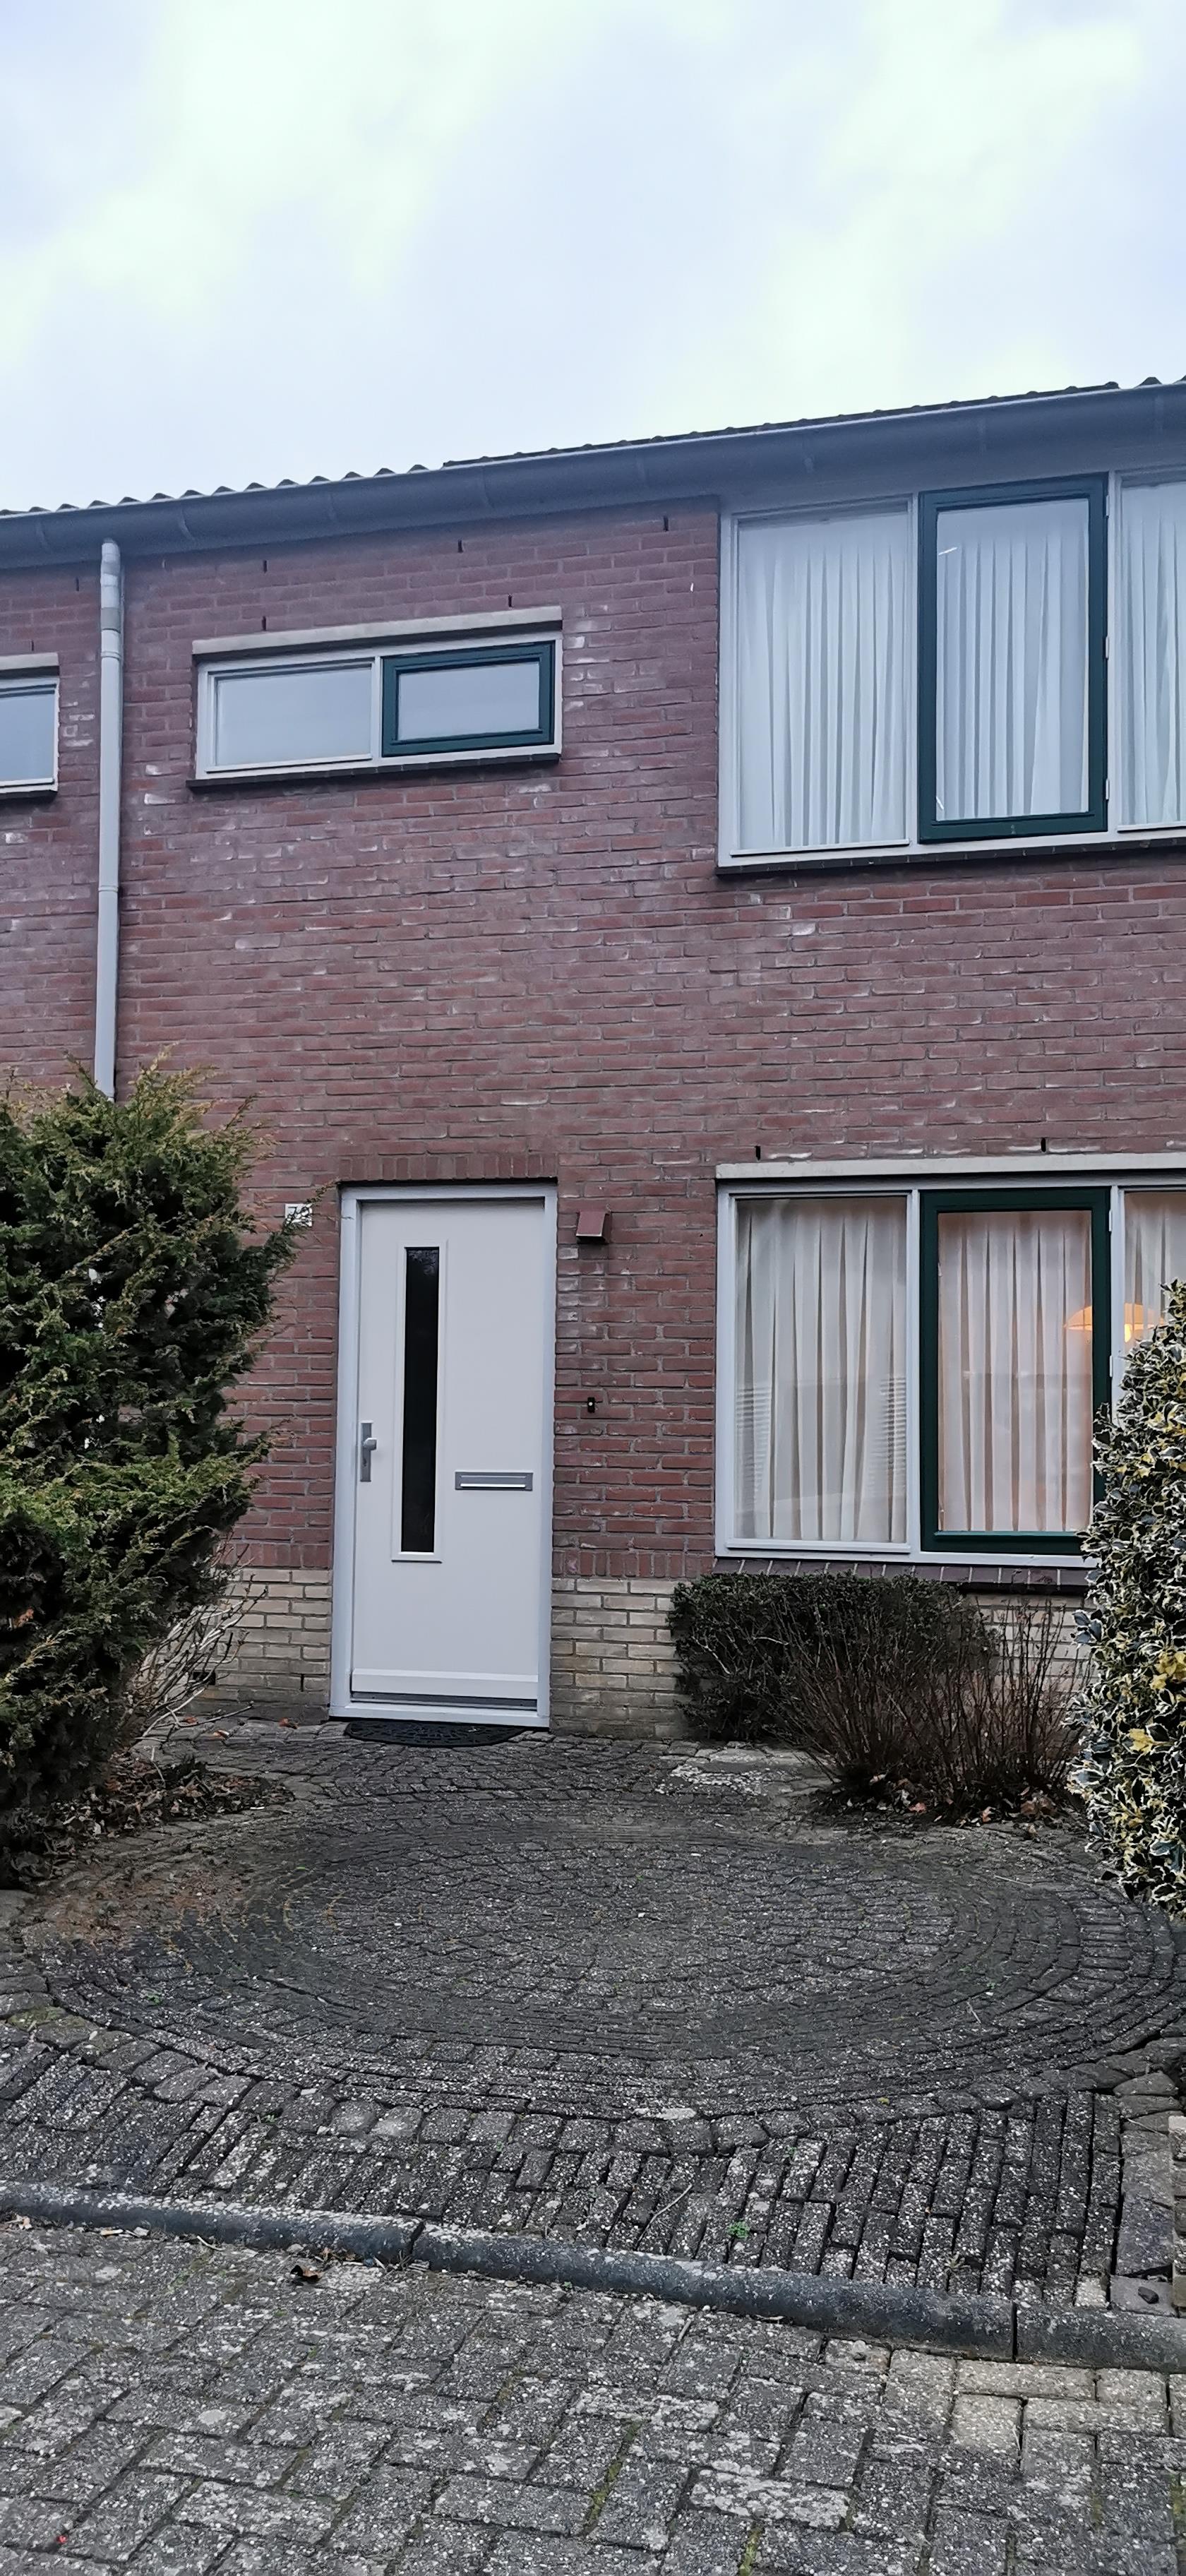 Meidoornstraat 79, 2665 DL Bleiswijk, Nederland